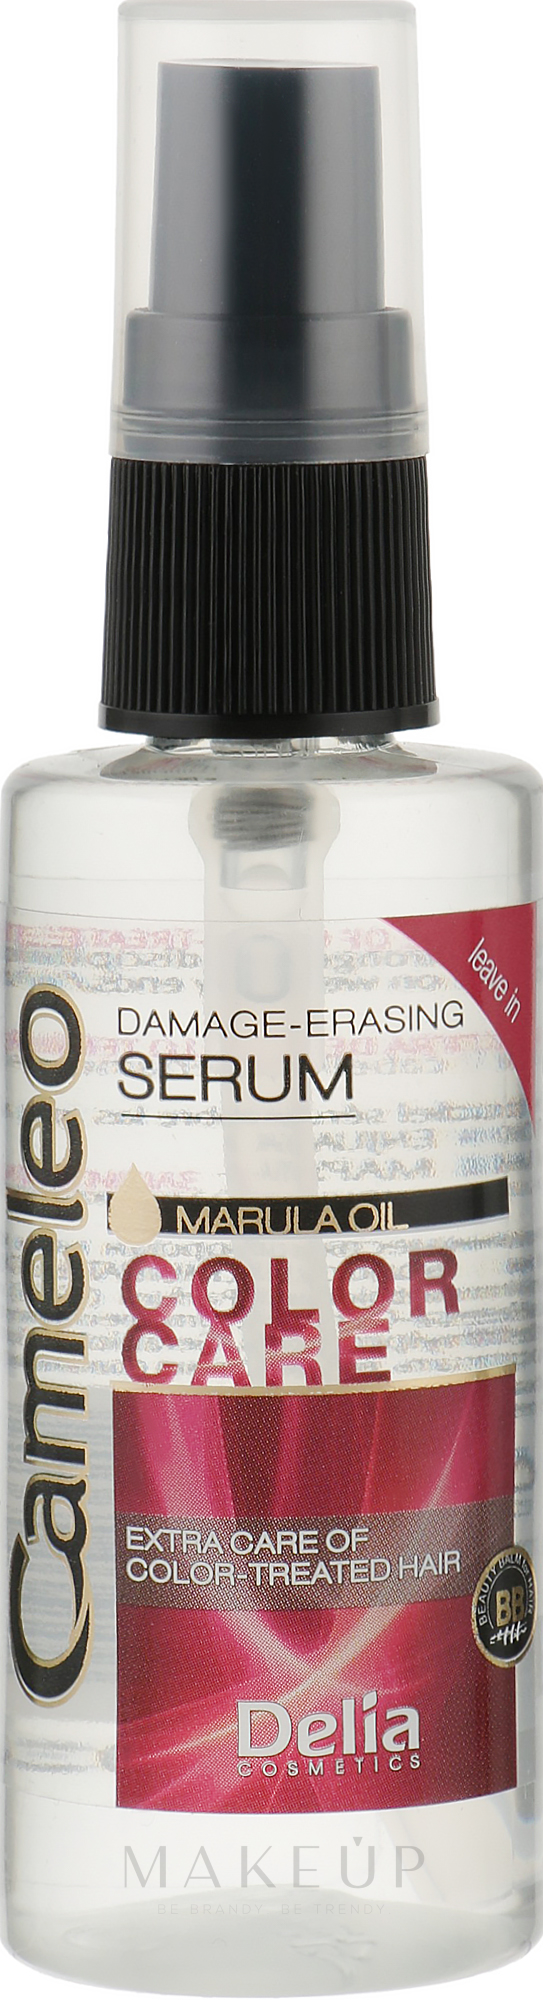 Reparierendes Serum für gefärbtes, aufgehelltes Haar mit Marulaöl ohne Ausspülen - Delia Cameleo Serum — Bild 55 ml